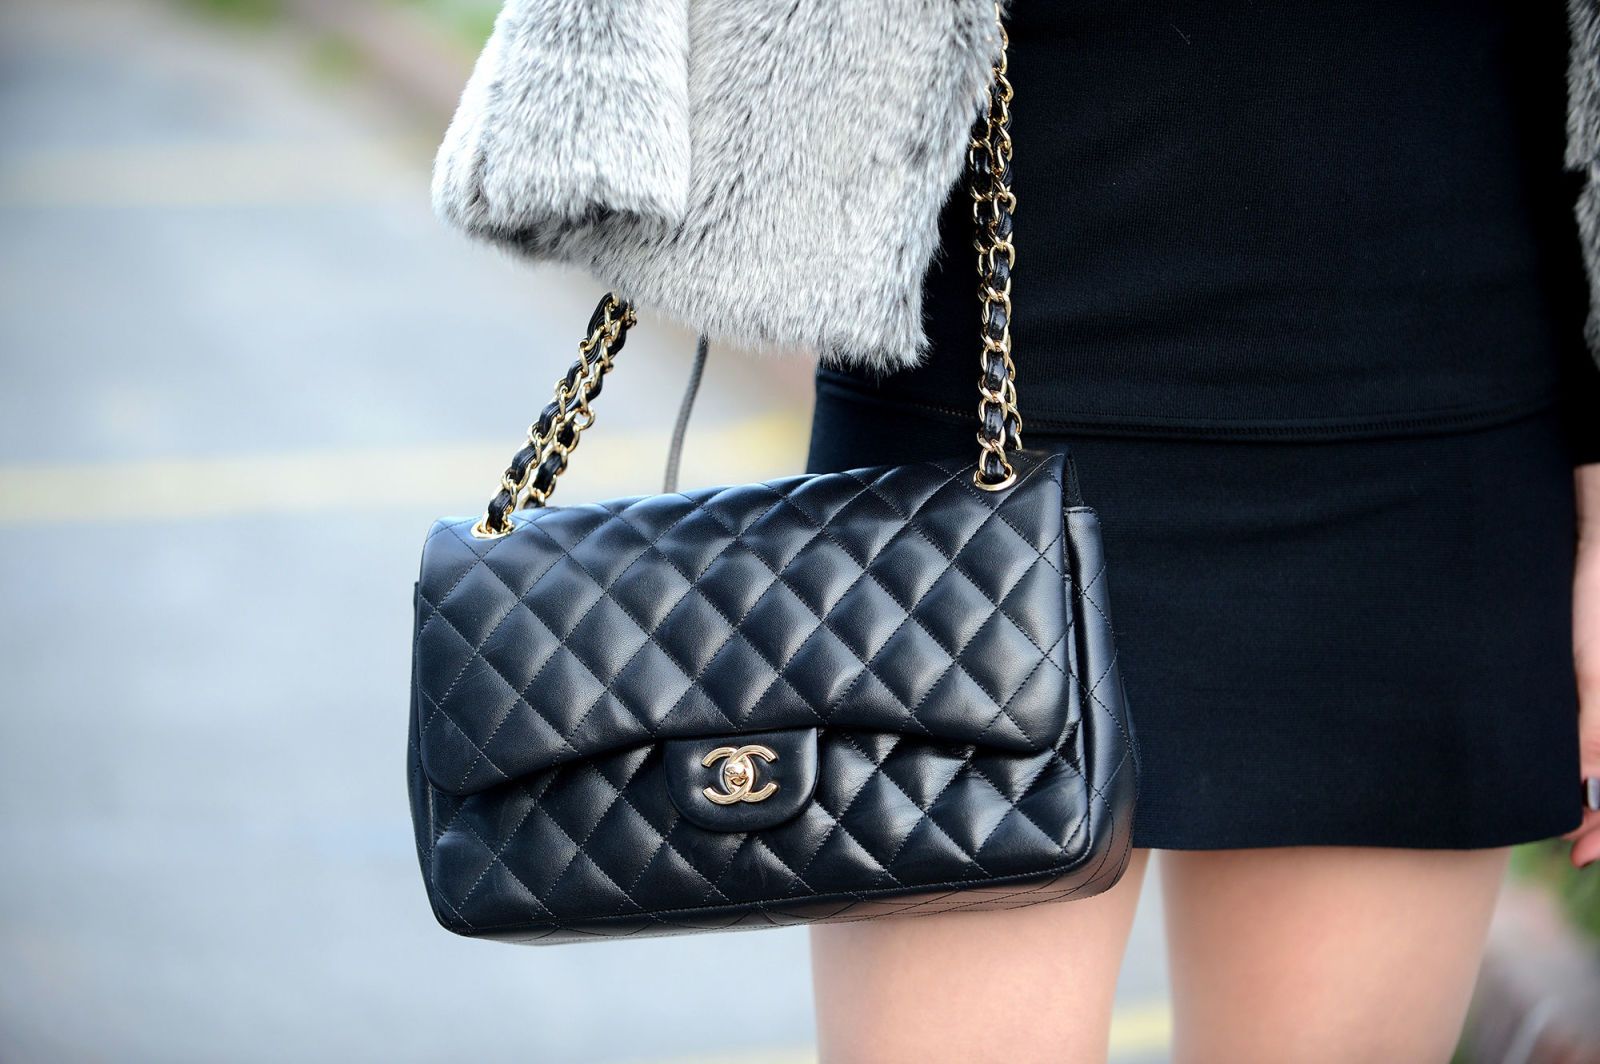 Chanel classic flap bag